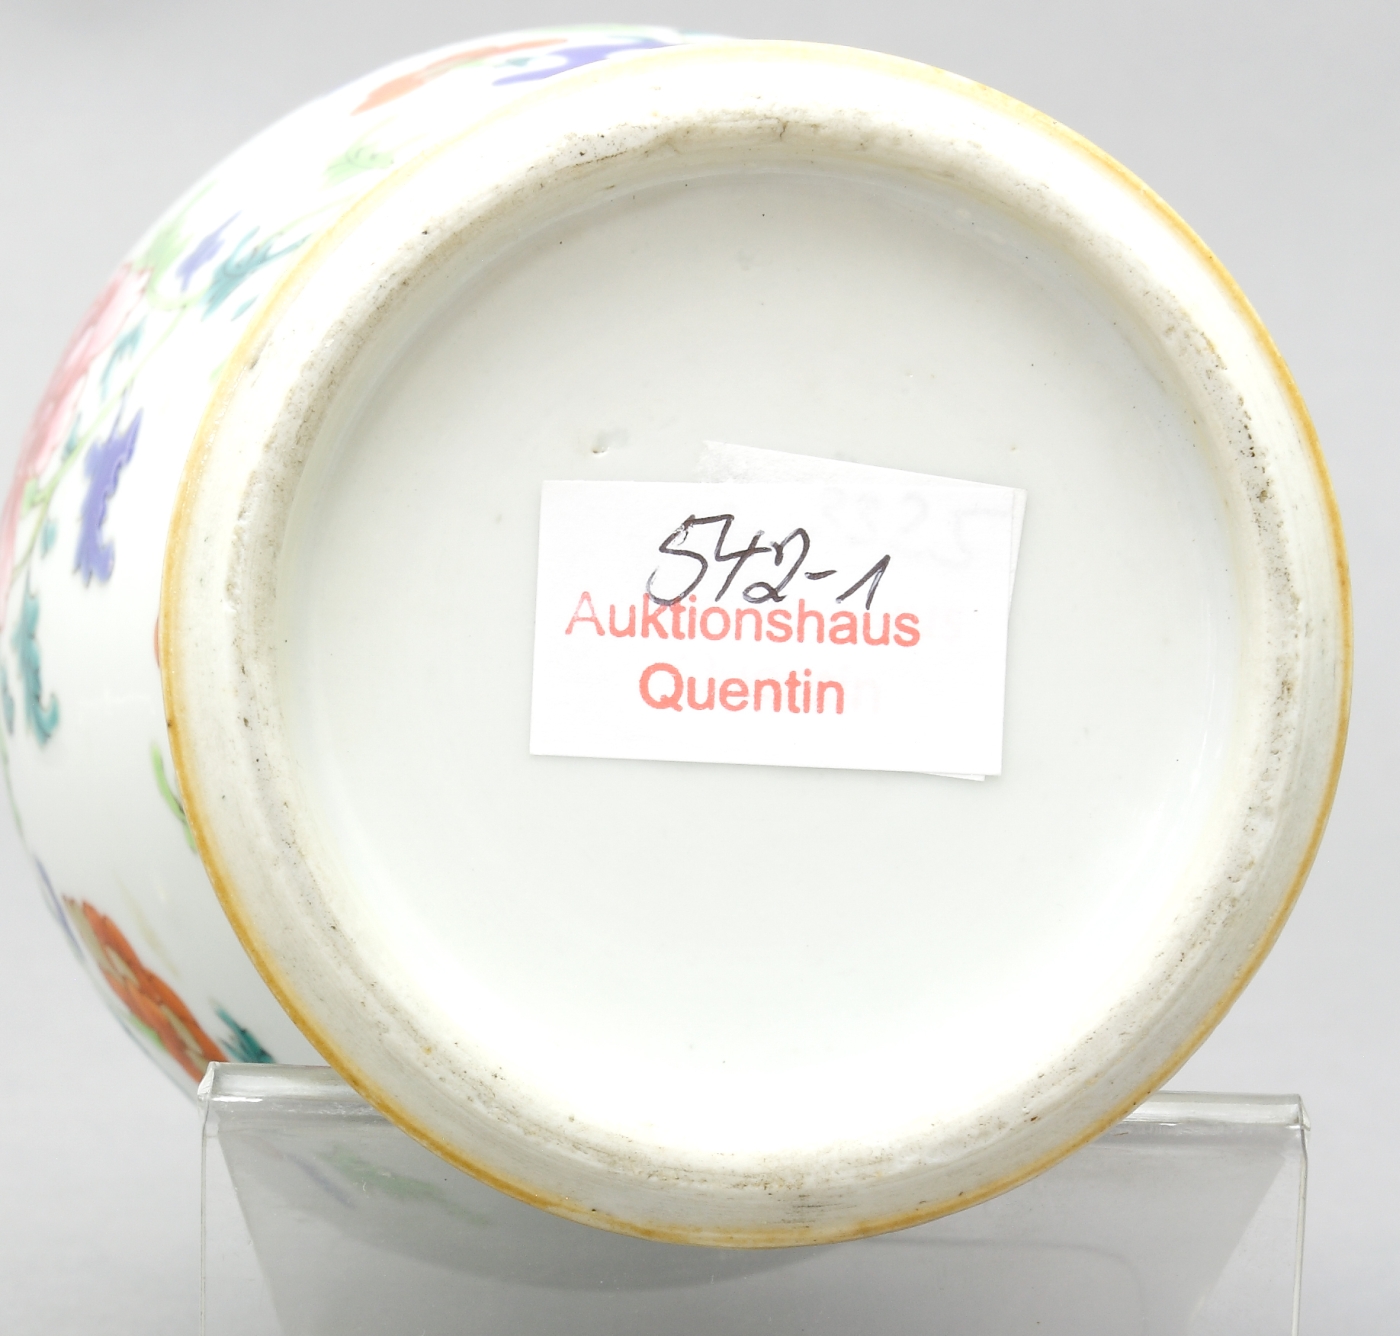 Auktionshaus Quentin Berlin  Möbel / Einrichtungsgegenstände China  Vase  Porzellan  Balusterform mit schmaler Schulter